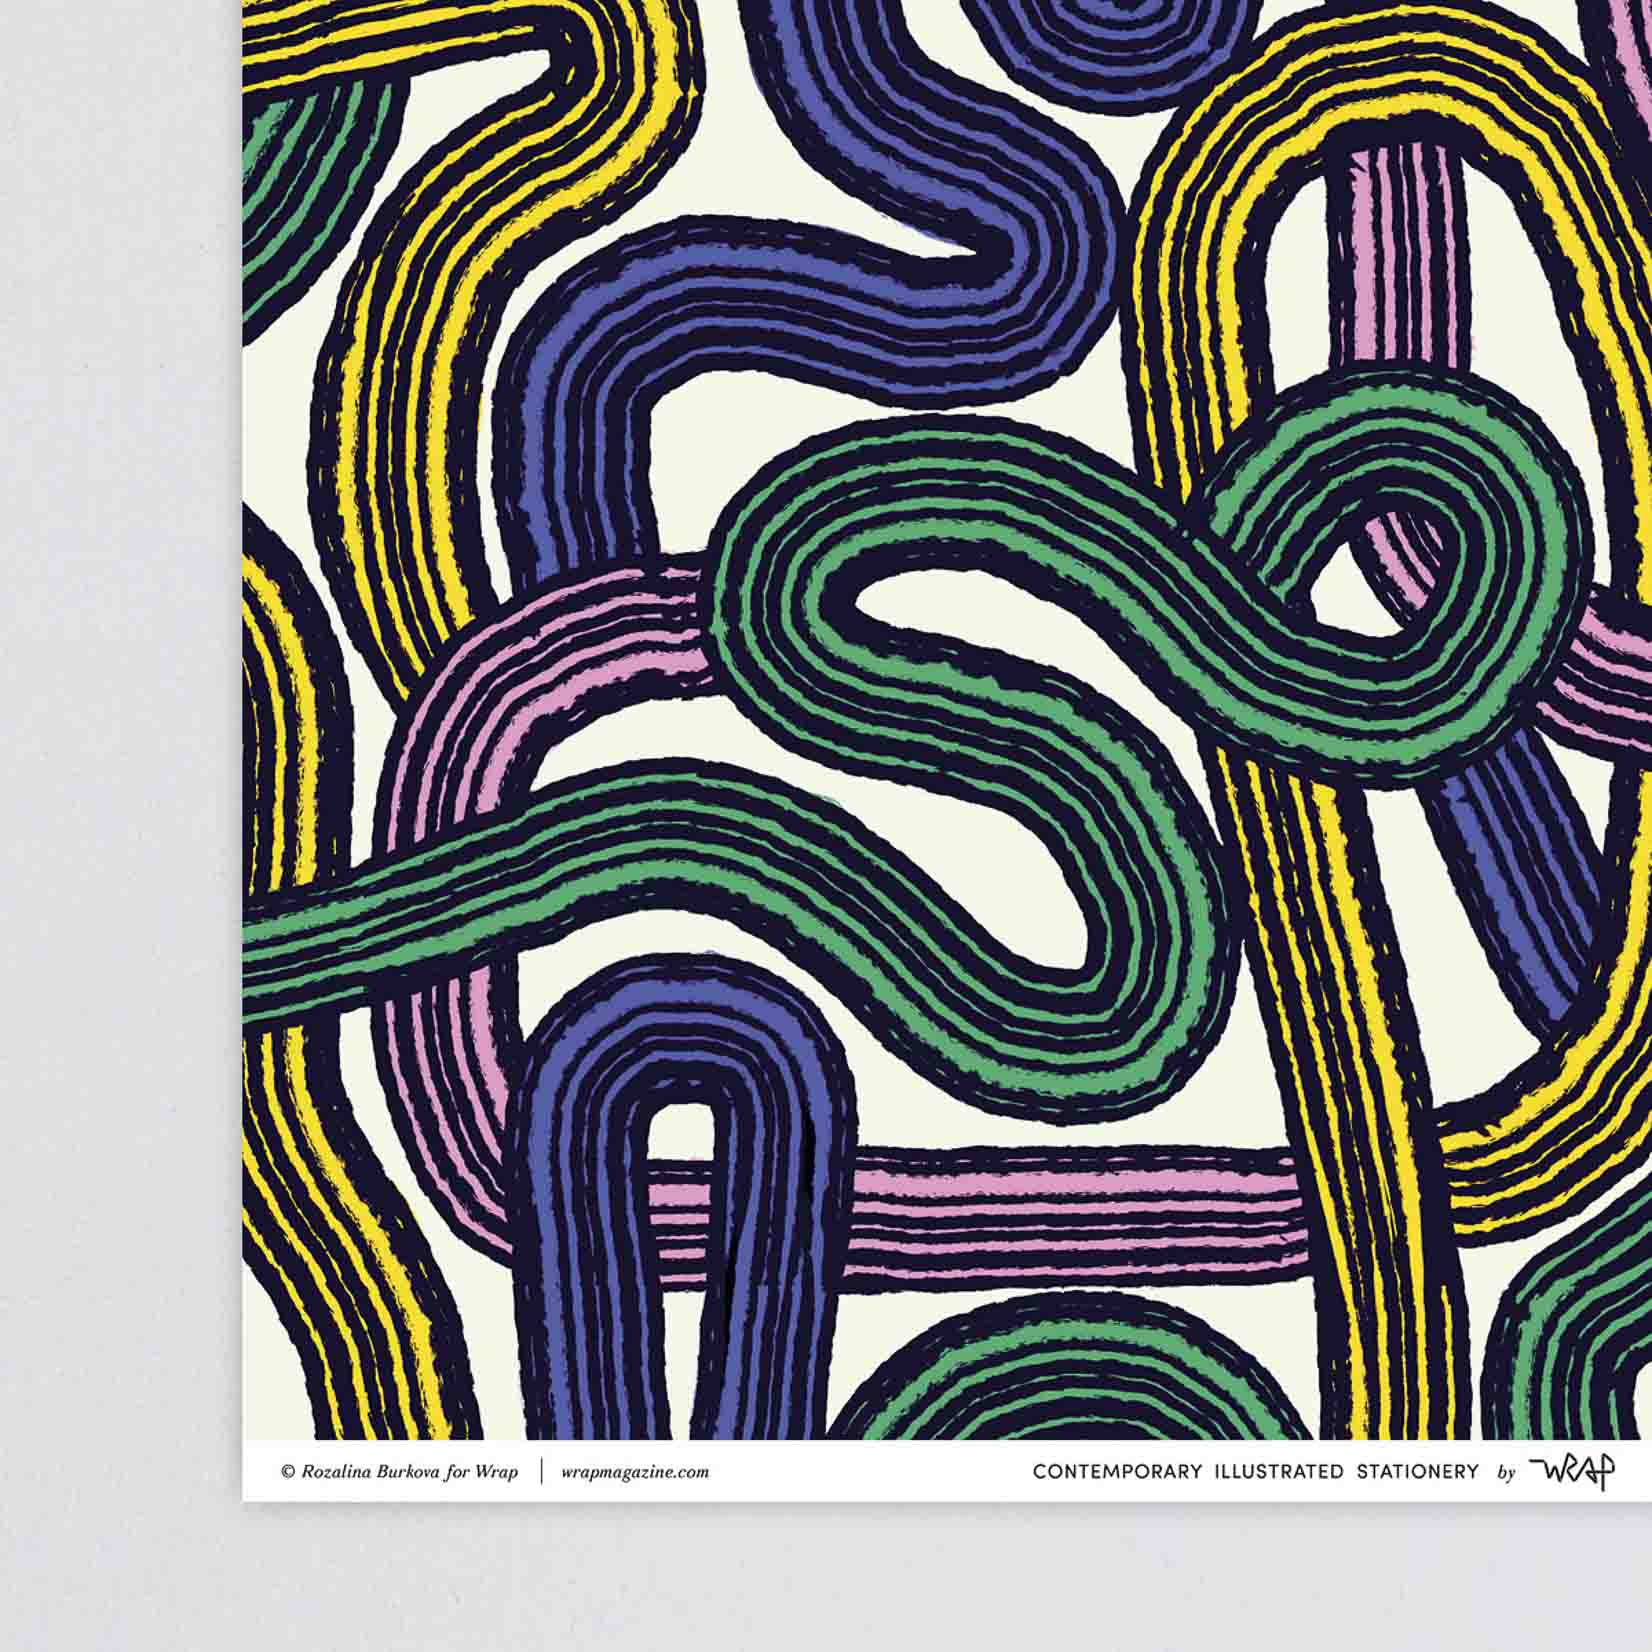 Geschenkpapier mit spiralförmigen, schwarz gestreiften Bändern in Gelb, Rosa, Violett und GrünWrap Geschenkpapier Spirals Spiralen Pinselstrich buntes Papier Pinsel Linien